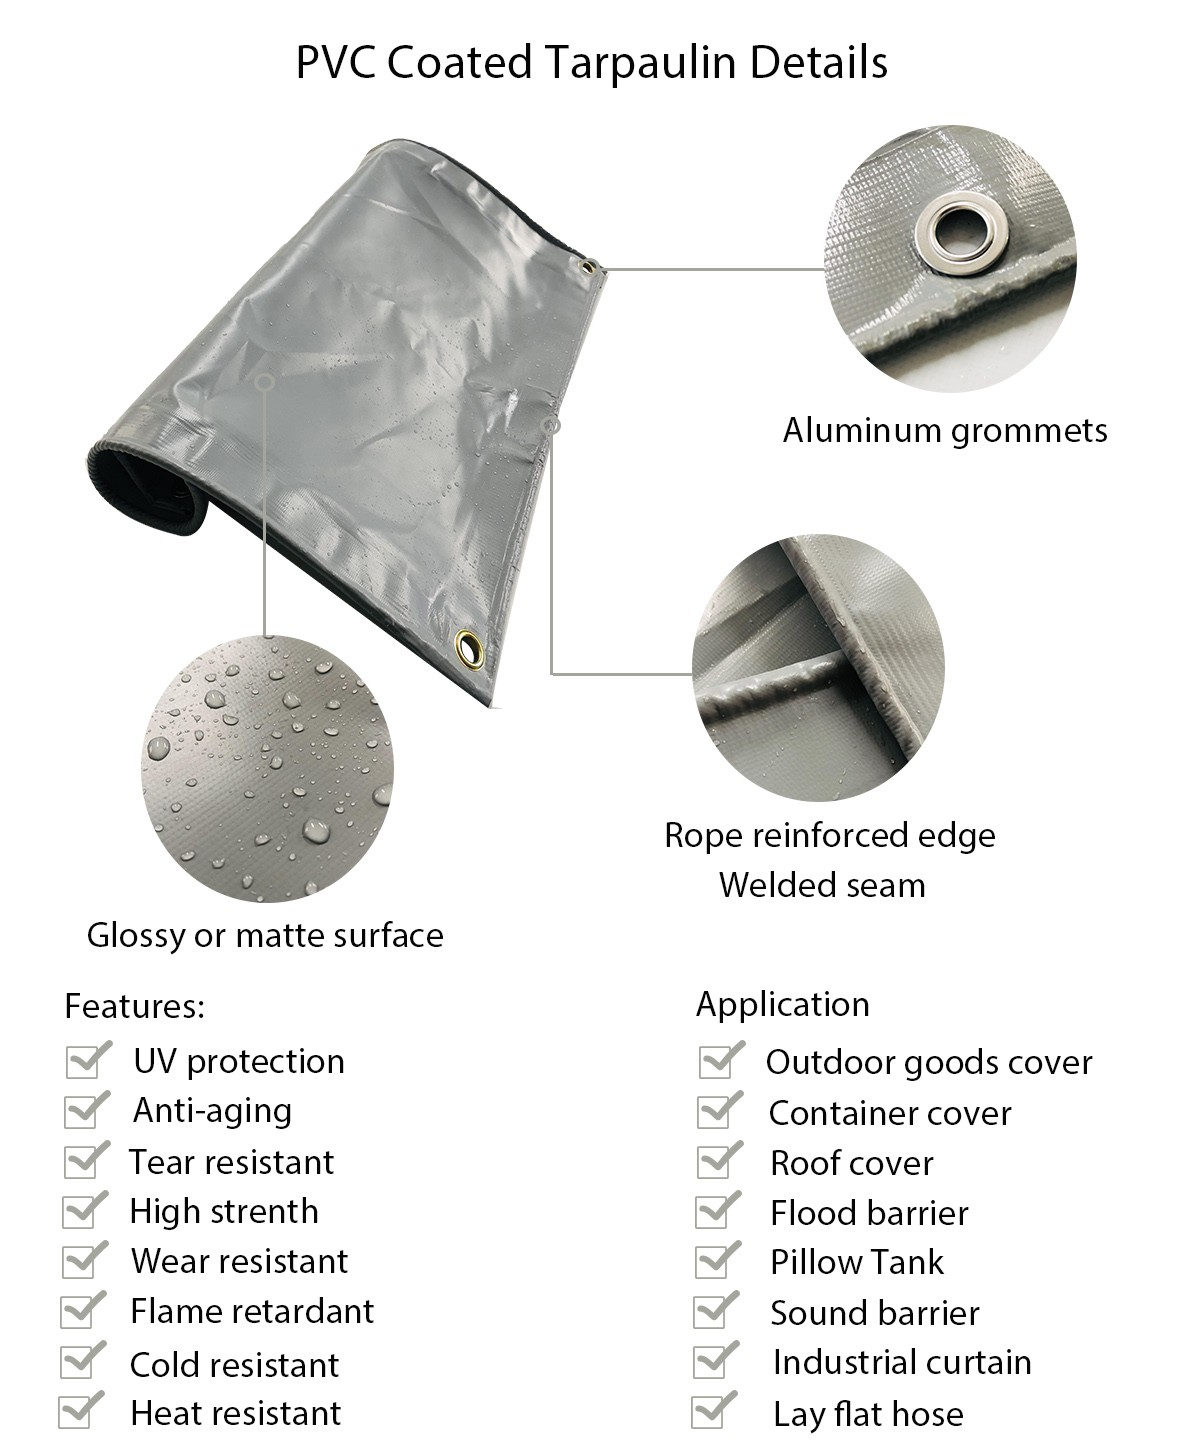 PVC coated tarpaulin,grey tarpaulin,custom tarpaulin,tarpaulin cover